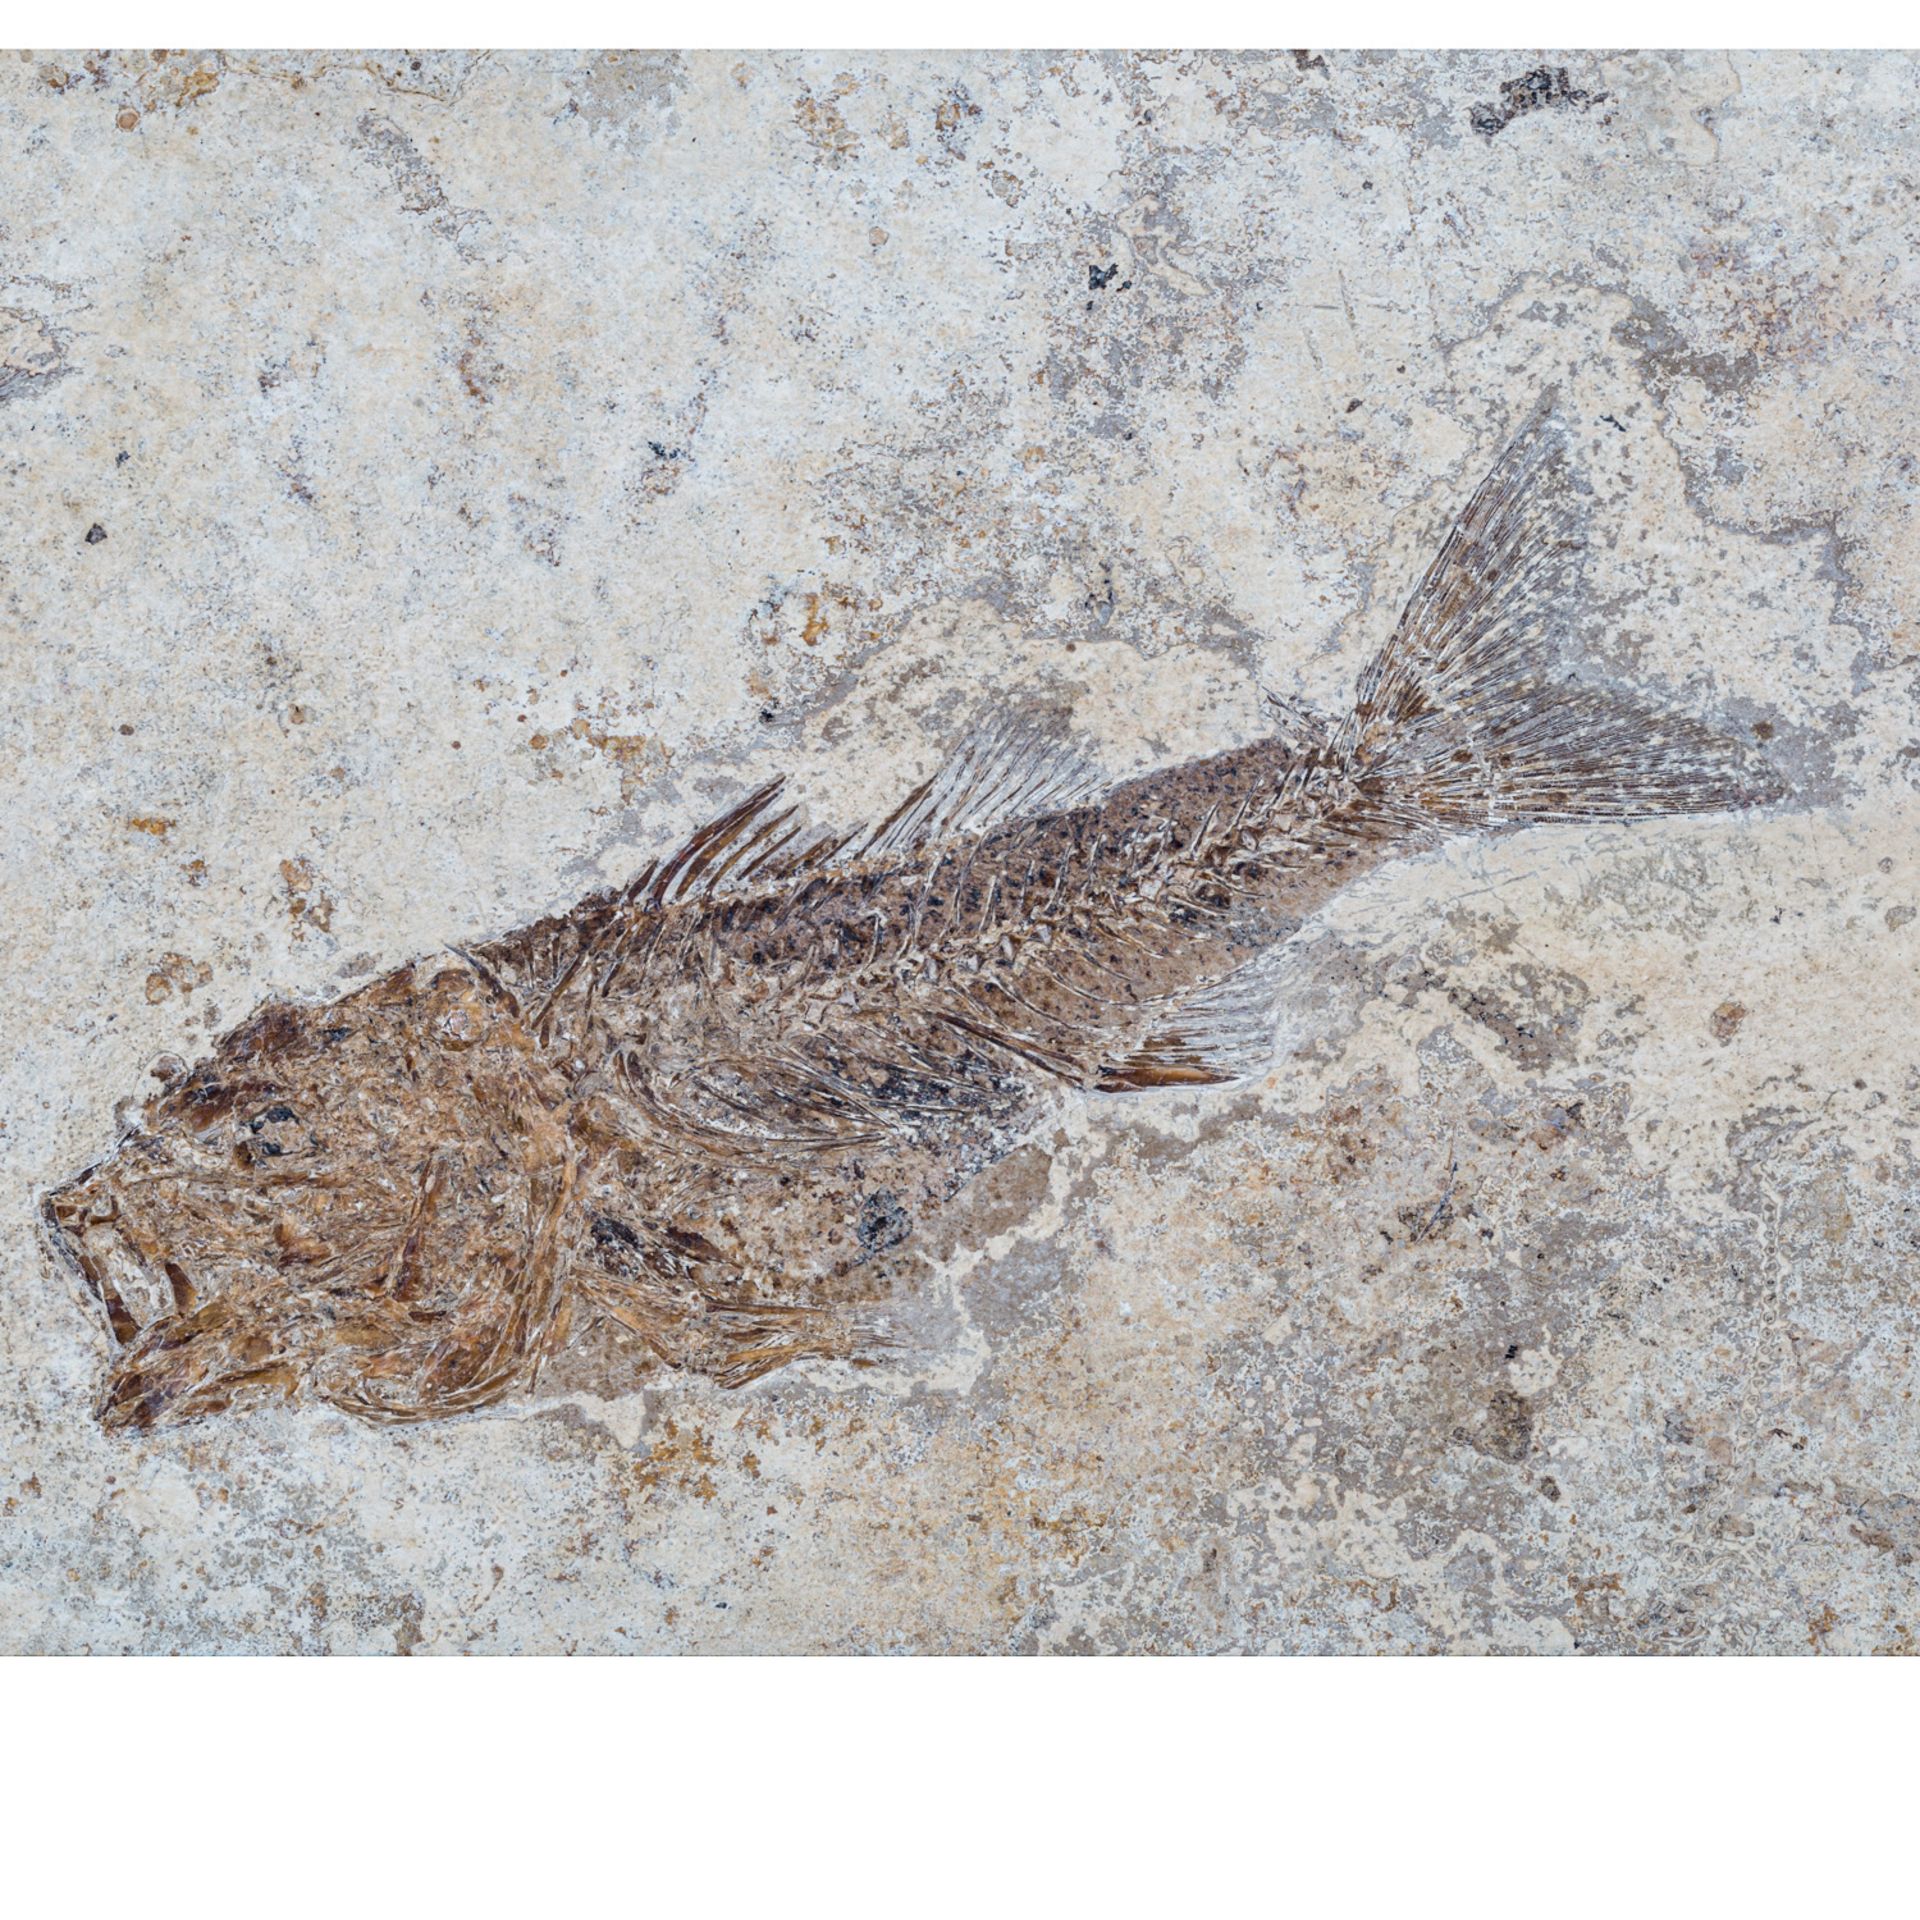 2 Fisch-Fossilien. - Bild 5 aus 6